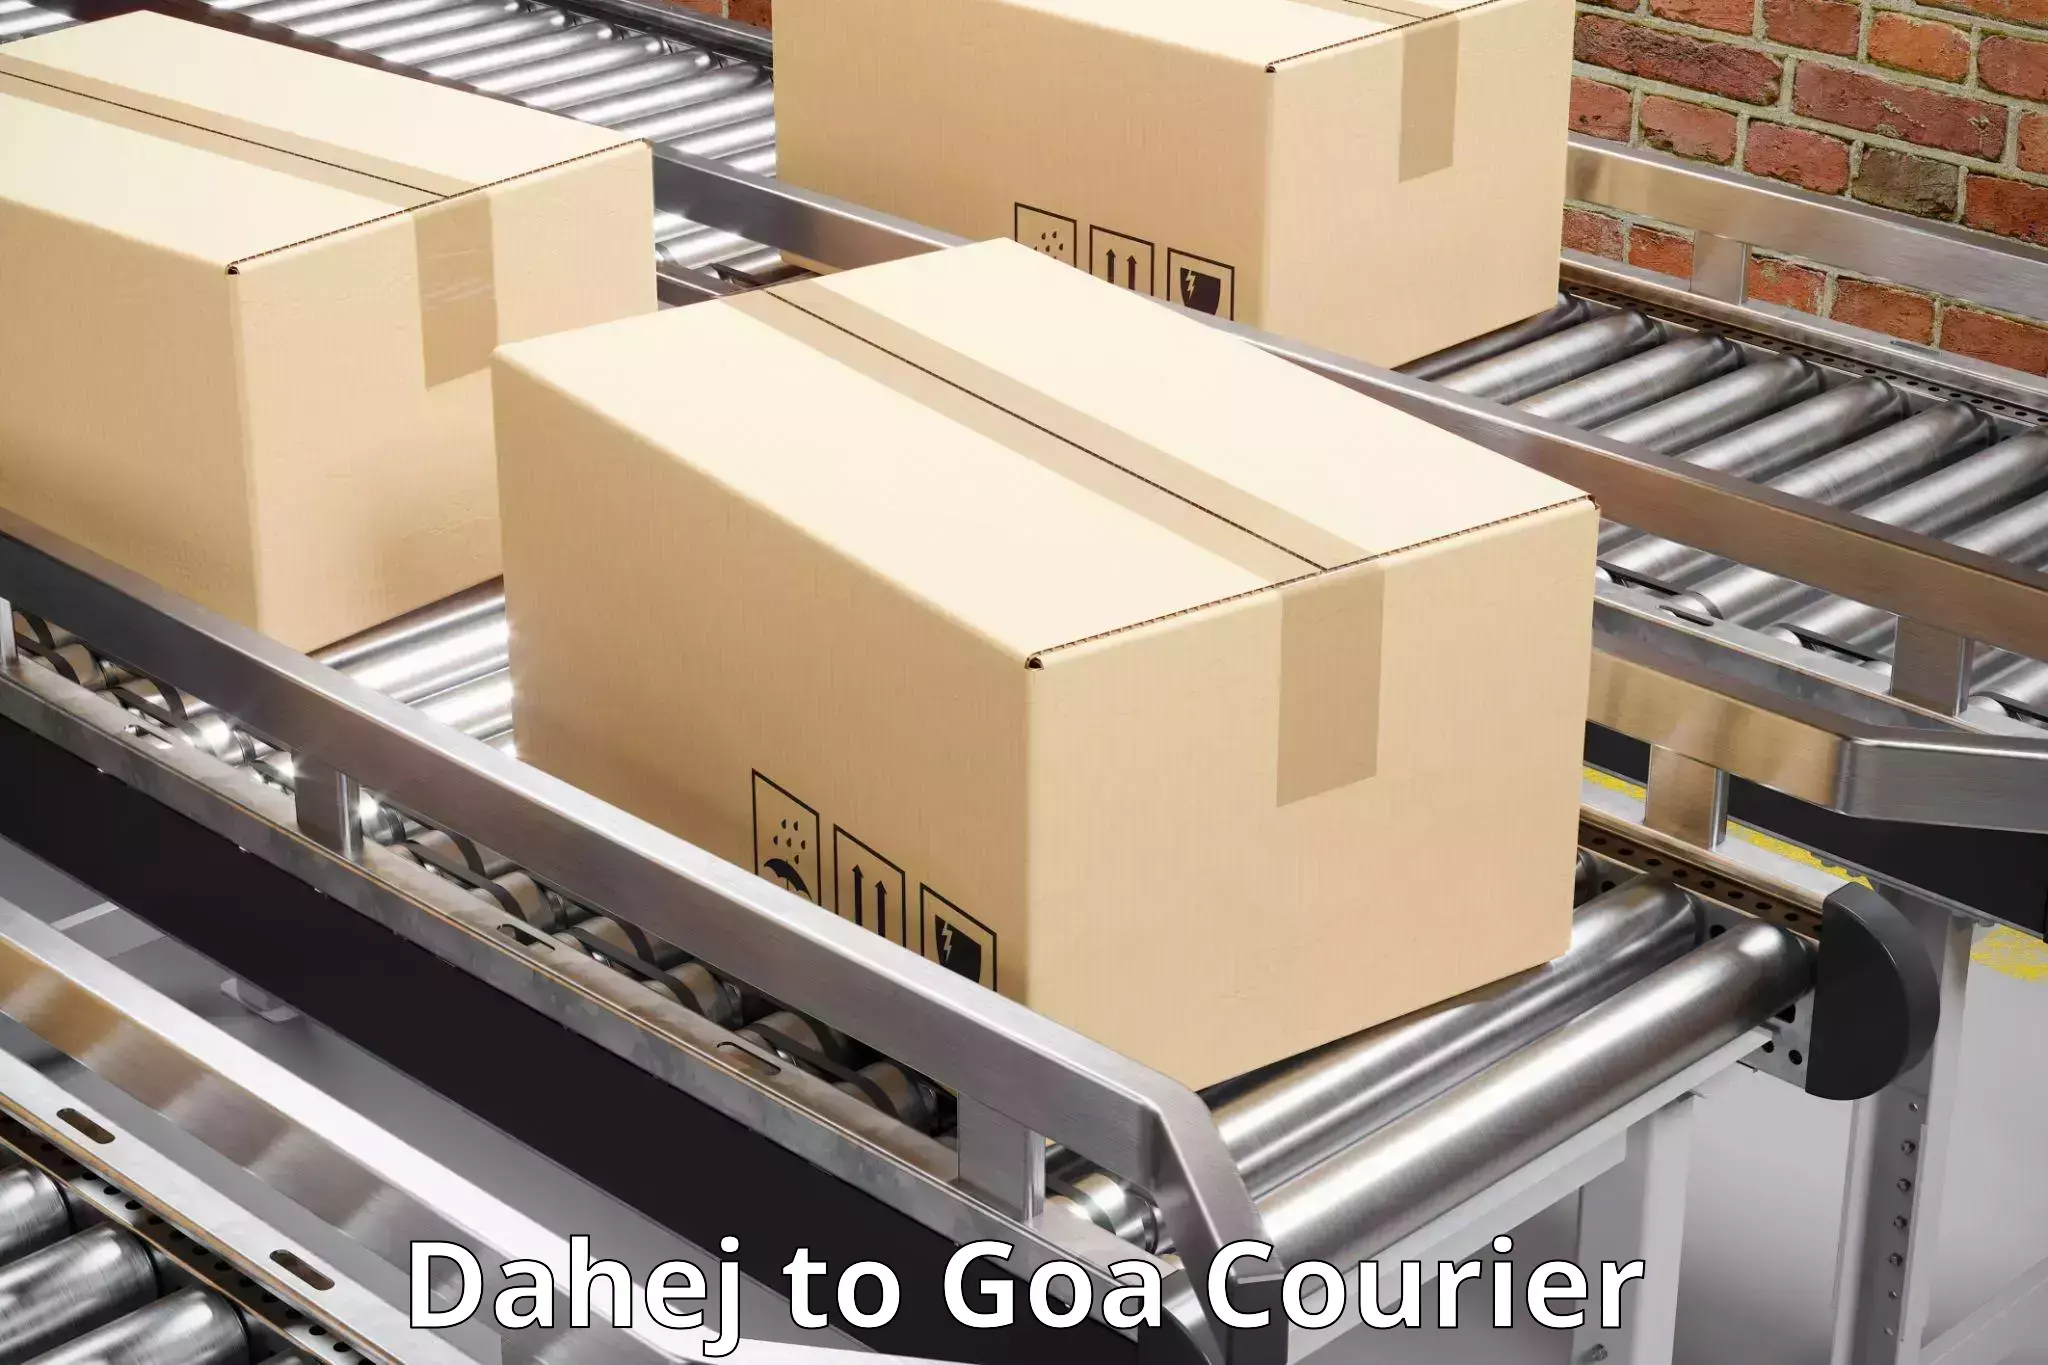 24-hour courier service Dahej to Goa University